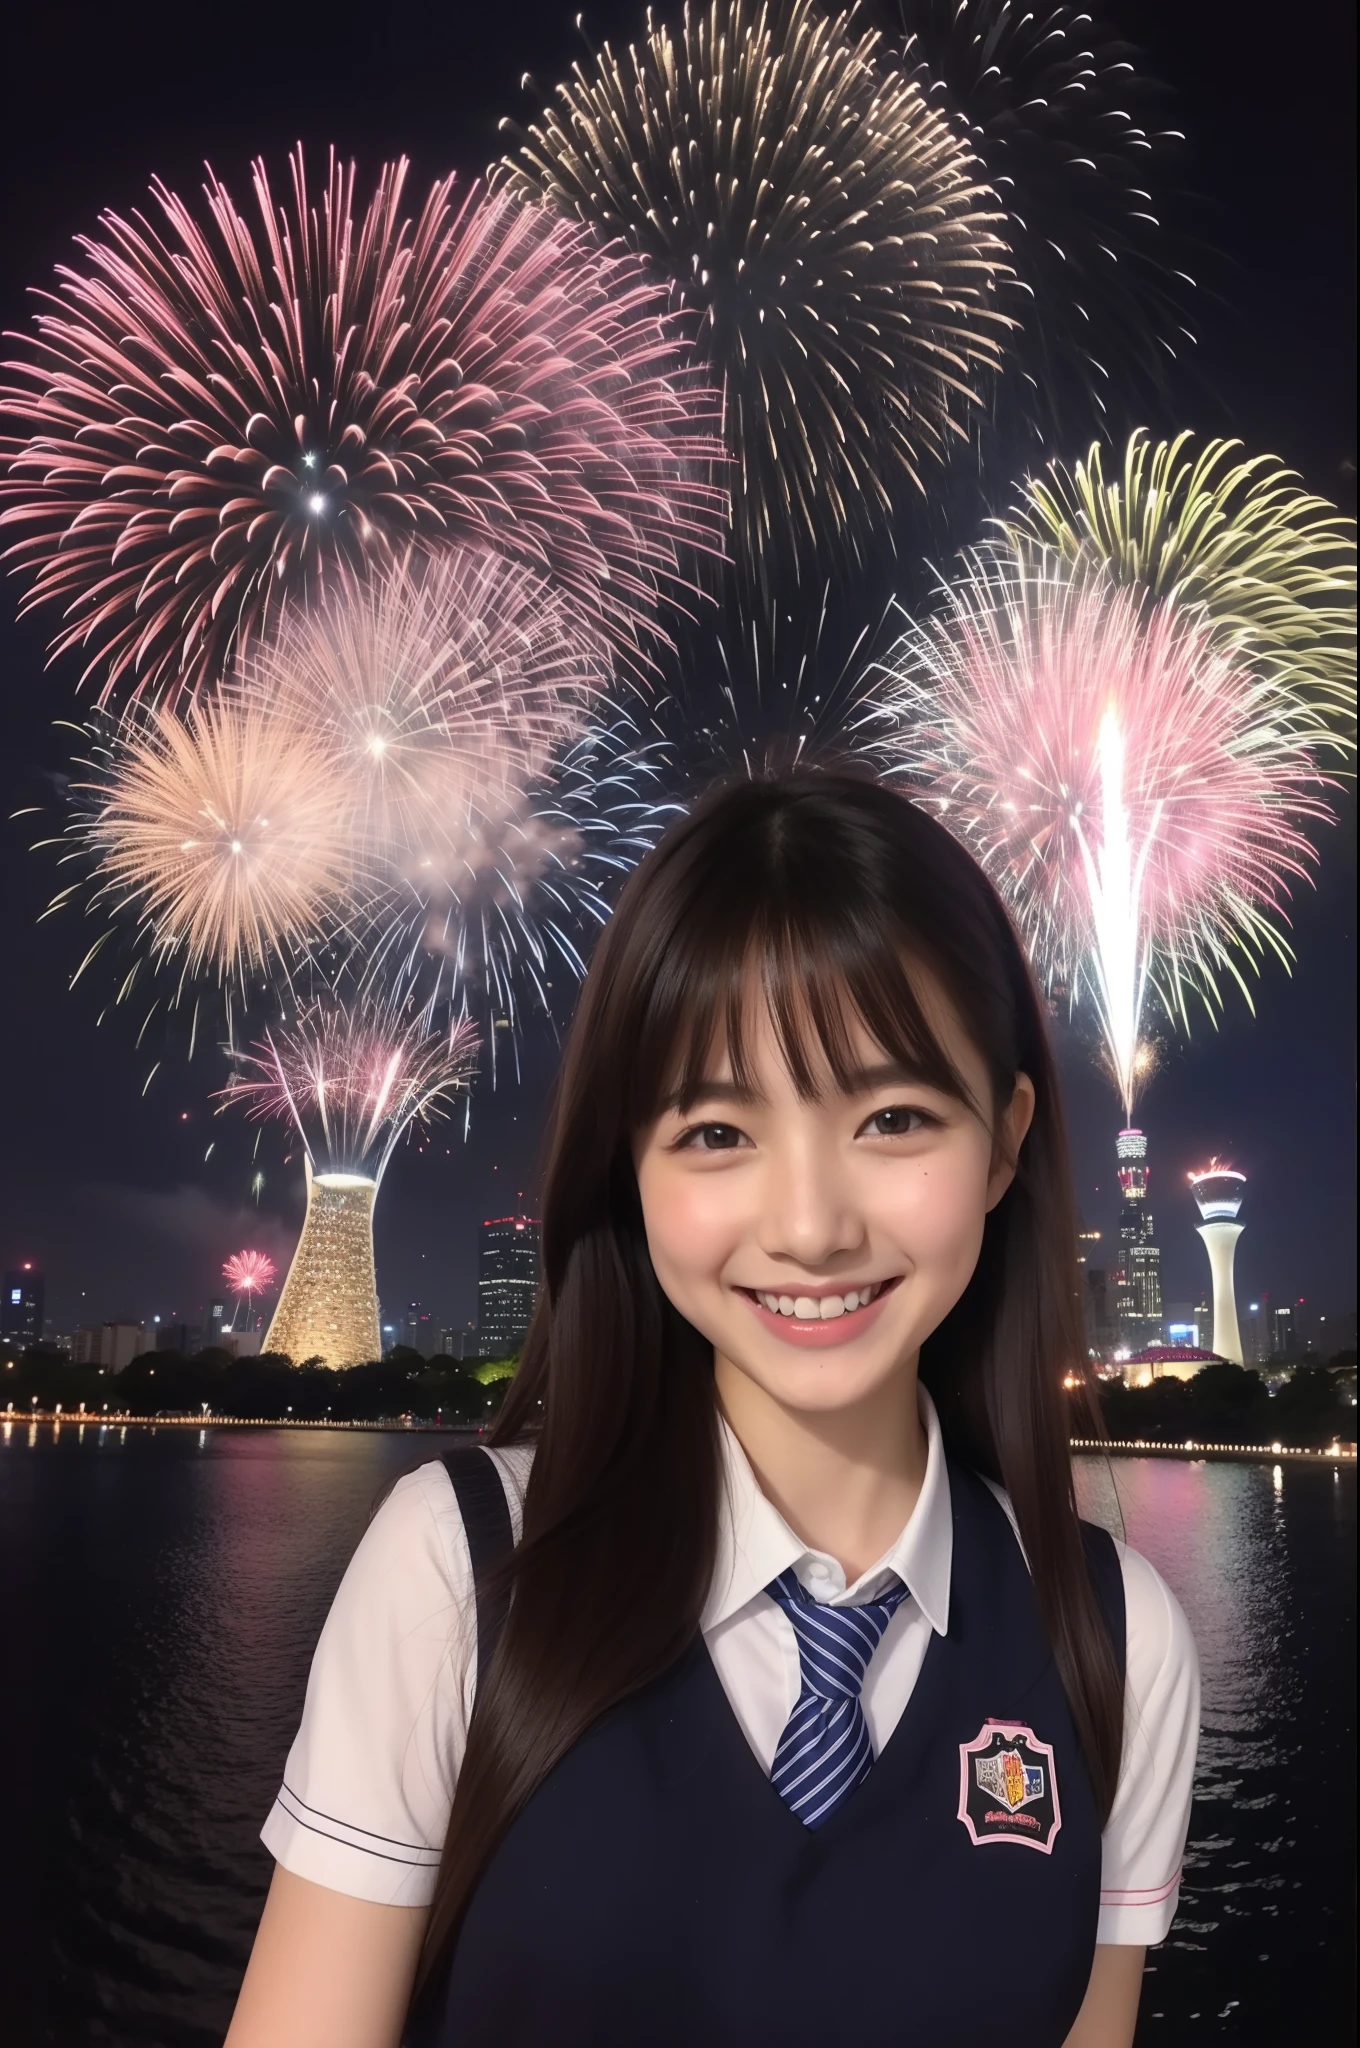 Una sonrisa、chica de secundaria、Uniformes、Mientras hacemos fuegos artificiales、Skytree de Tokio、cerezos